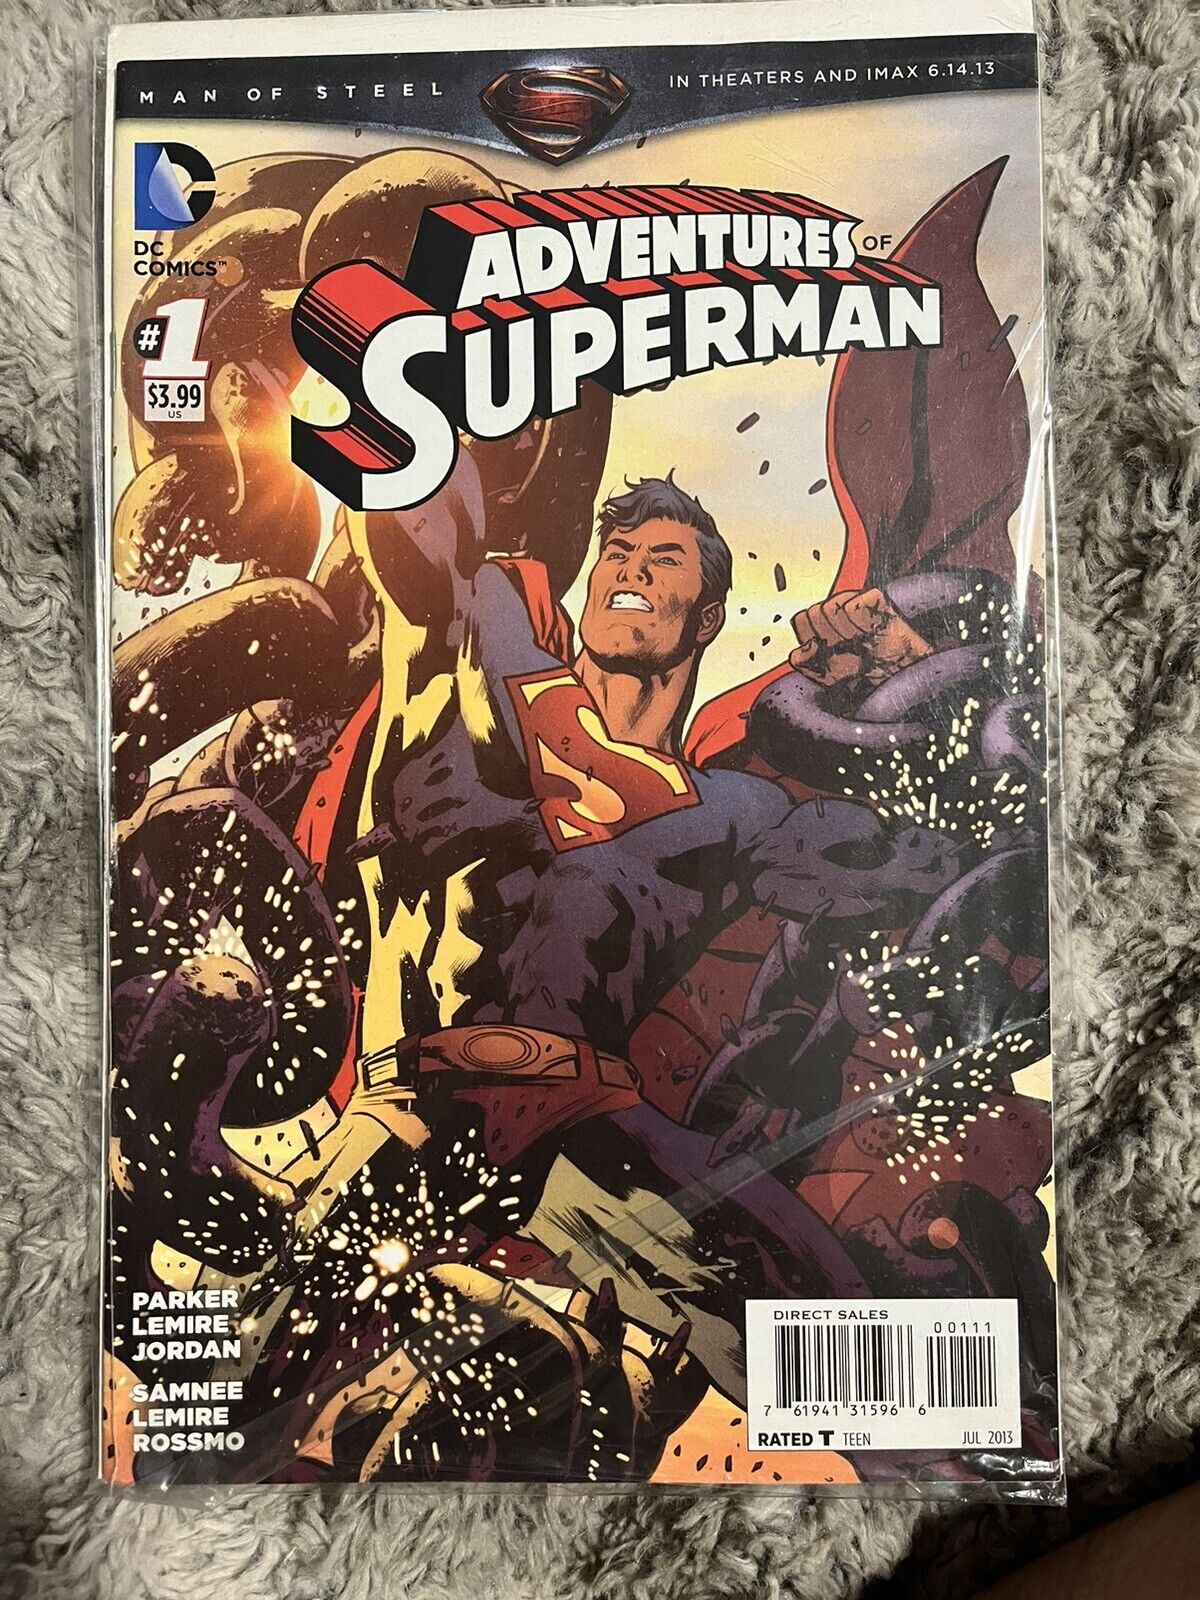 Adventures of Superman #1 (07/2013) DC Comics Parker & Lemire